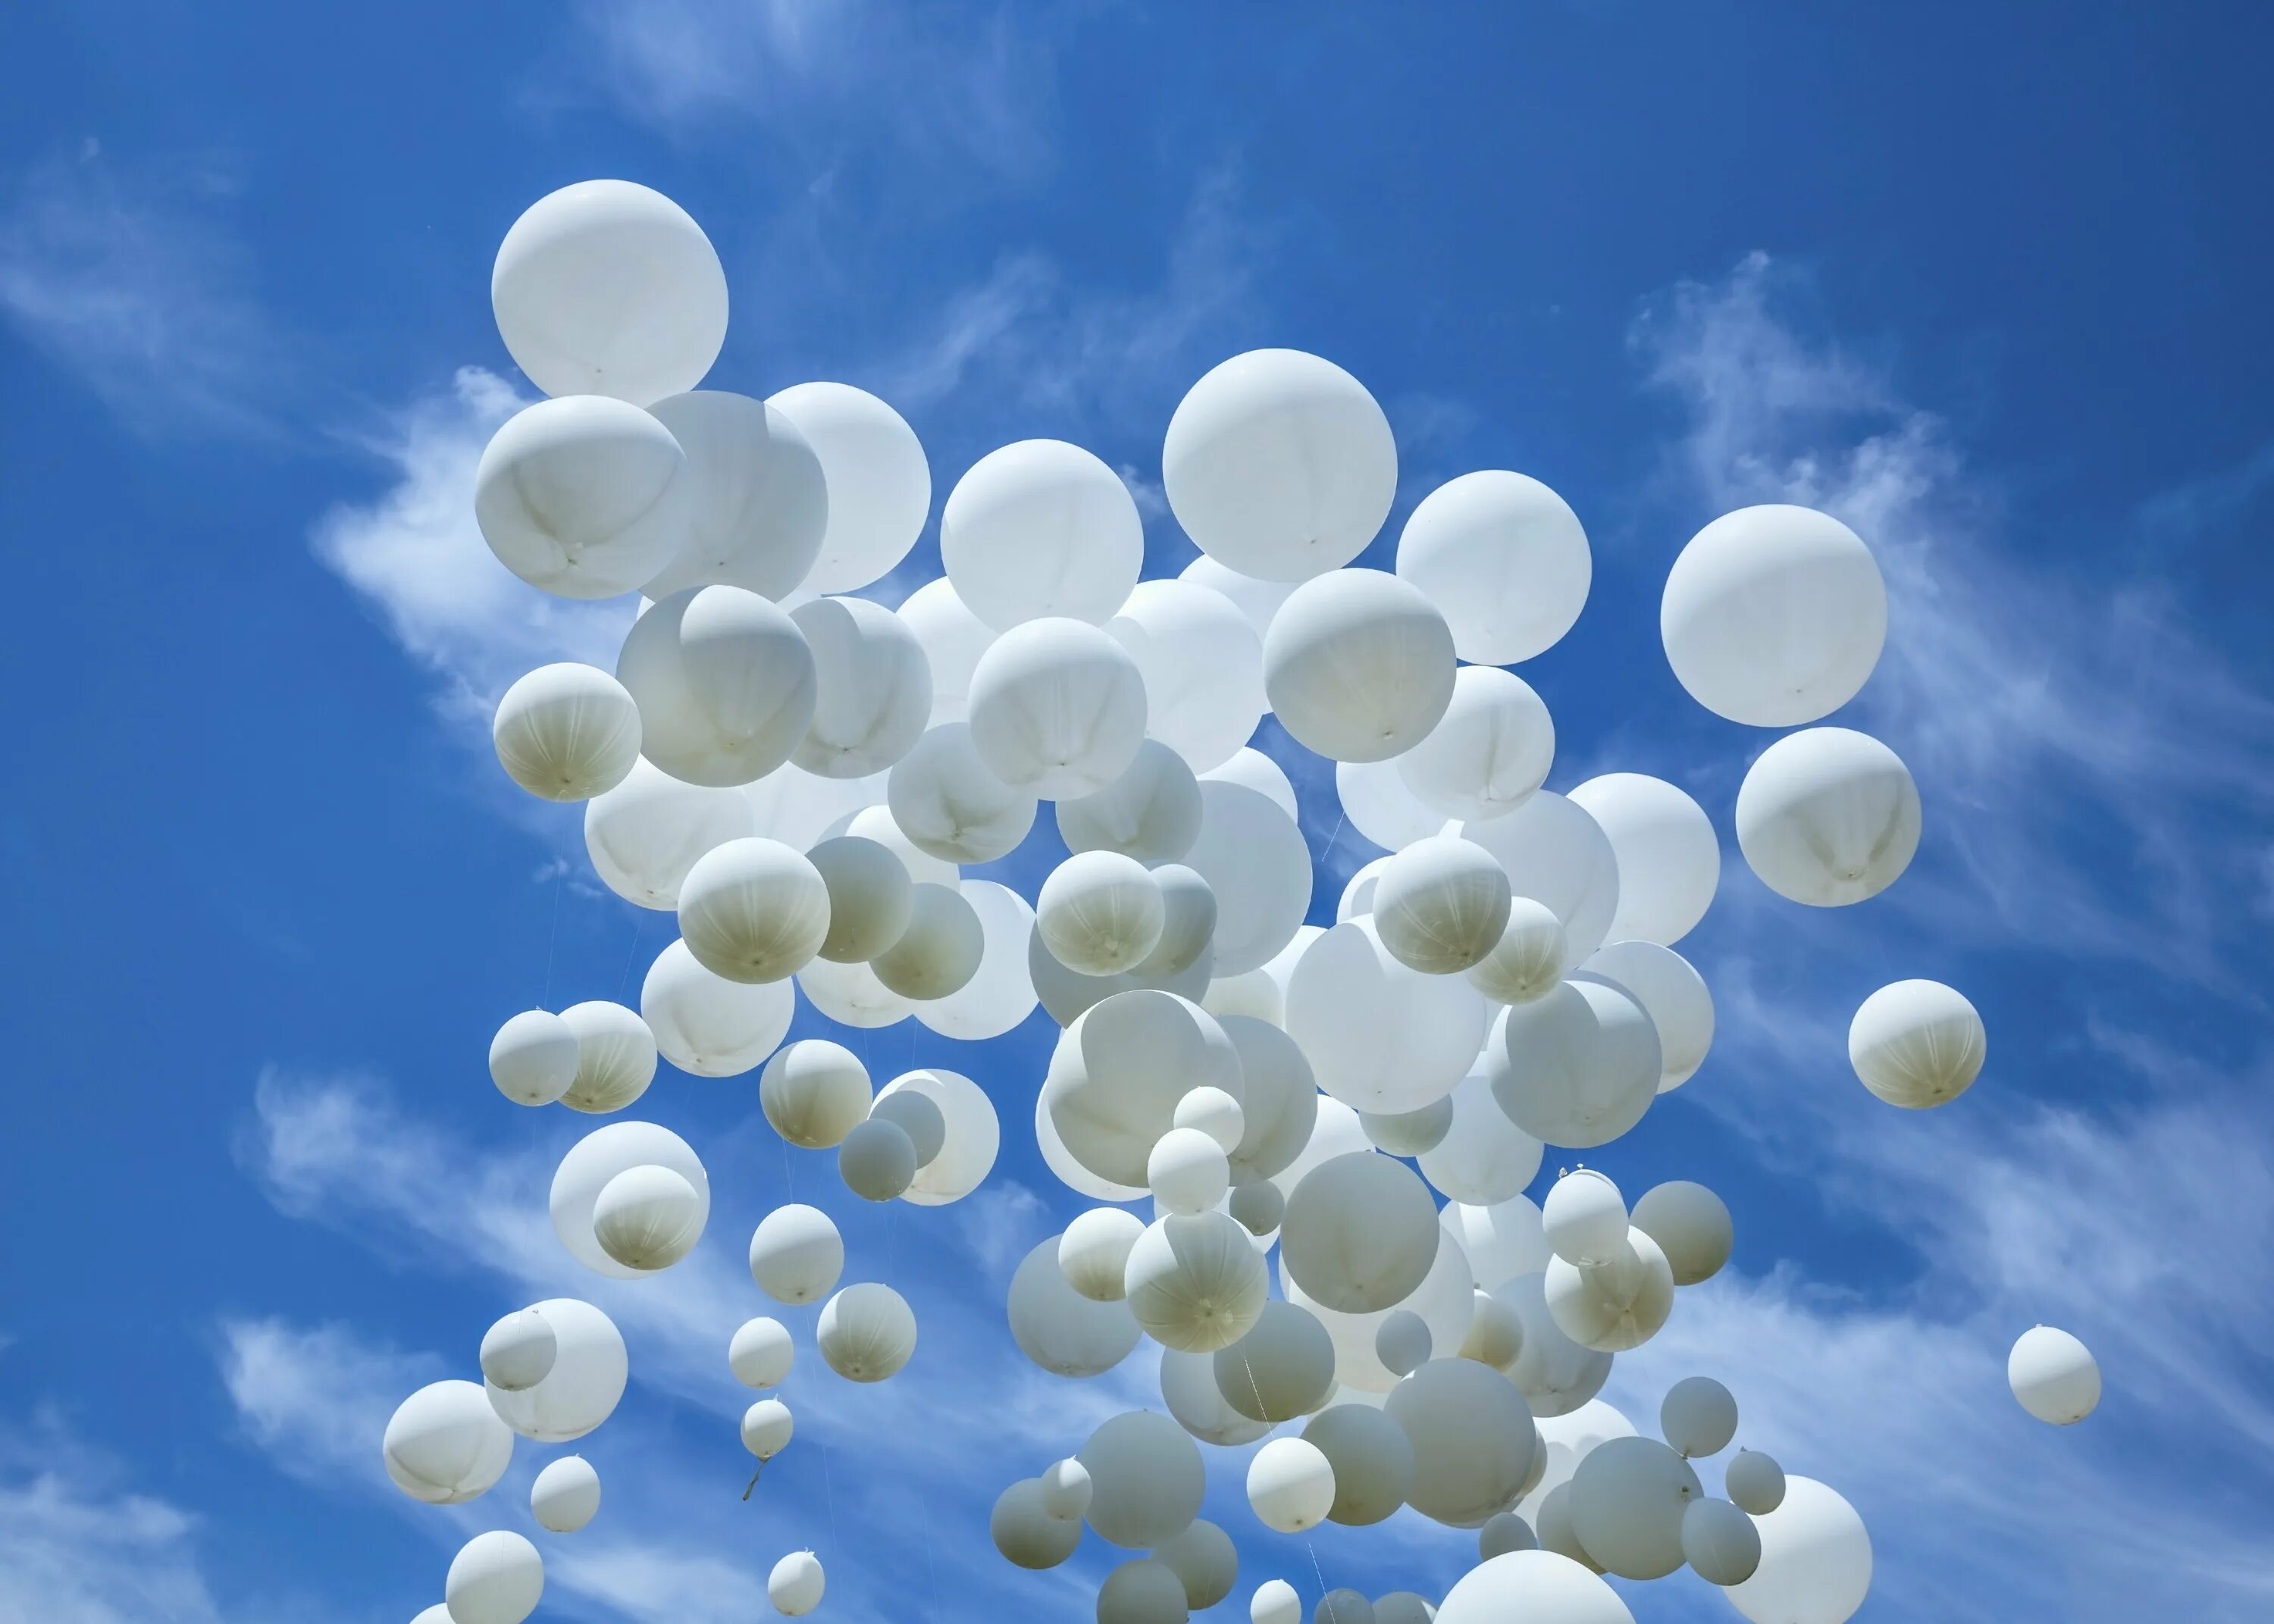 Шары улетели в небо. Шары в небе. Воздушный шарик. Воздушные шары в небе. Белые шары в небе.